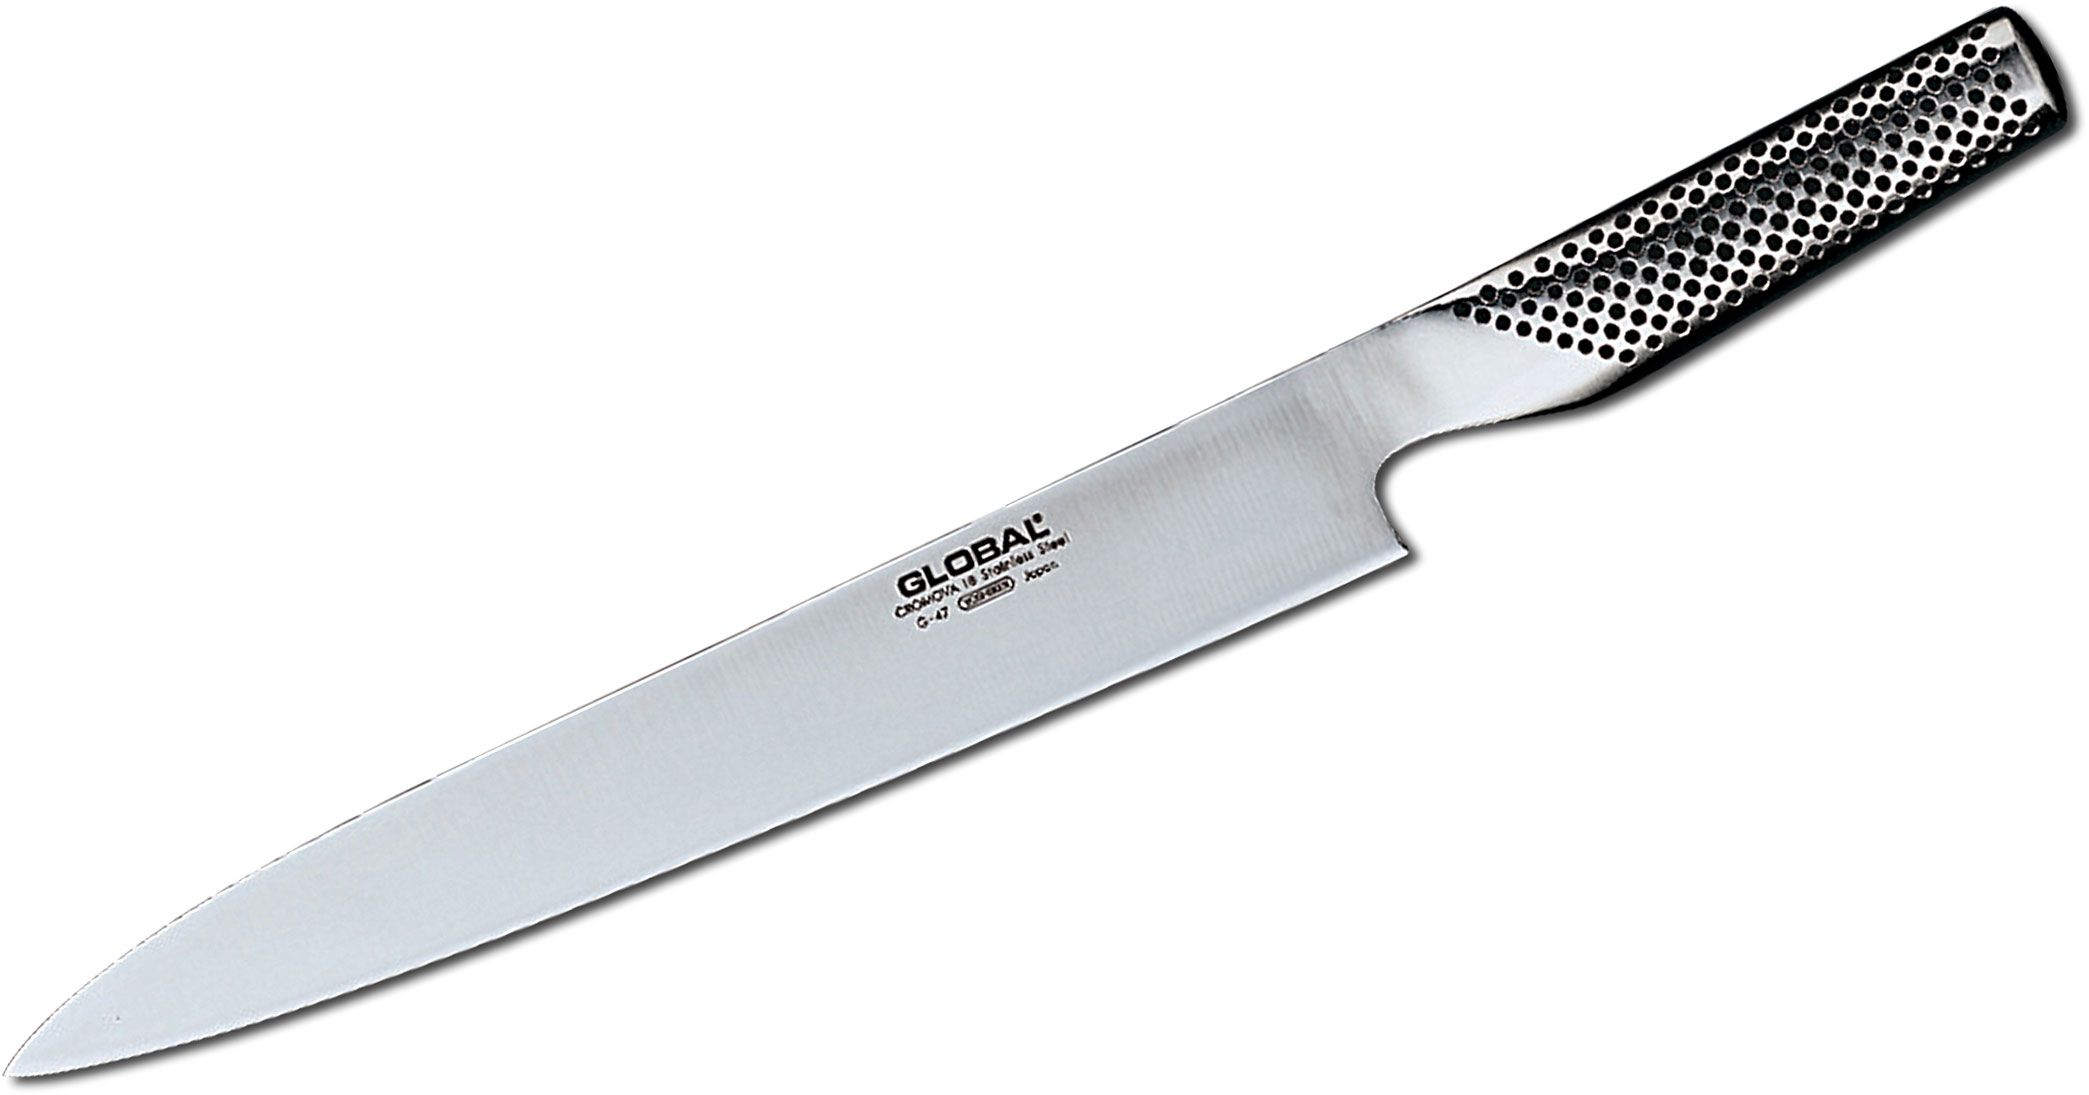 Hound Gå rundt markedsføring Global G-47 Classic 10" Two Sided Sashimi Slicer Knife - KnifeCenter